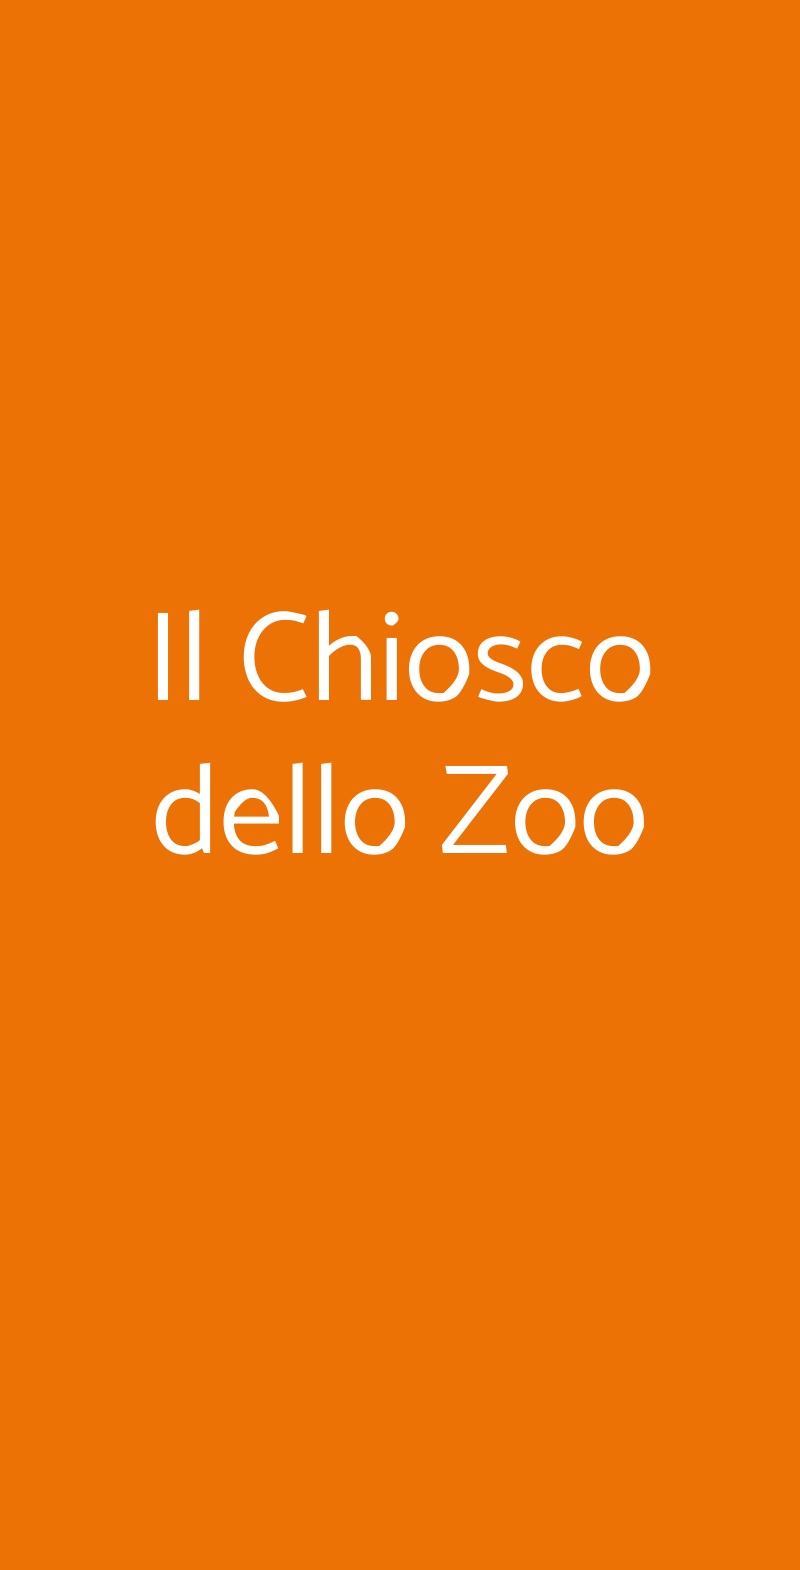 Il Chiosco dello Zoo Torino menù 1 pagina